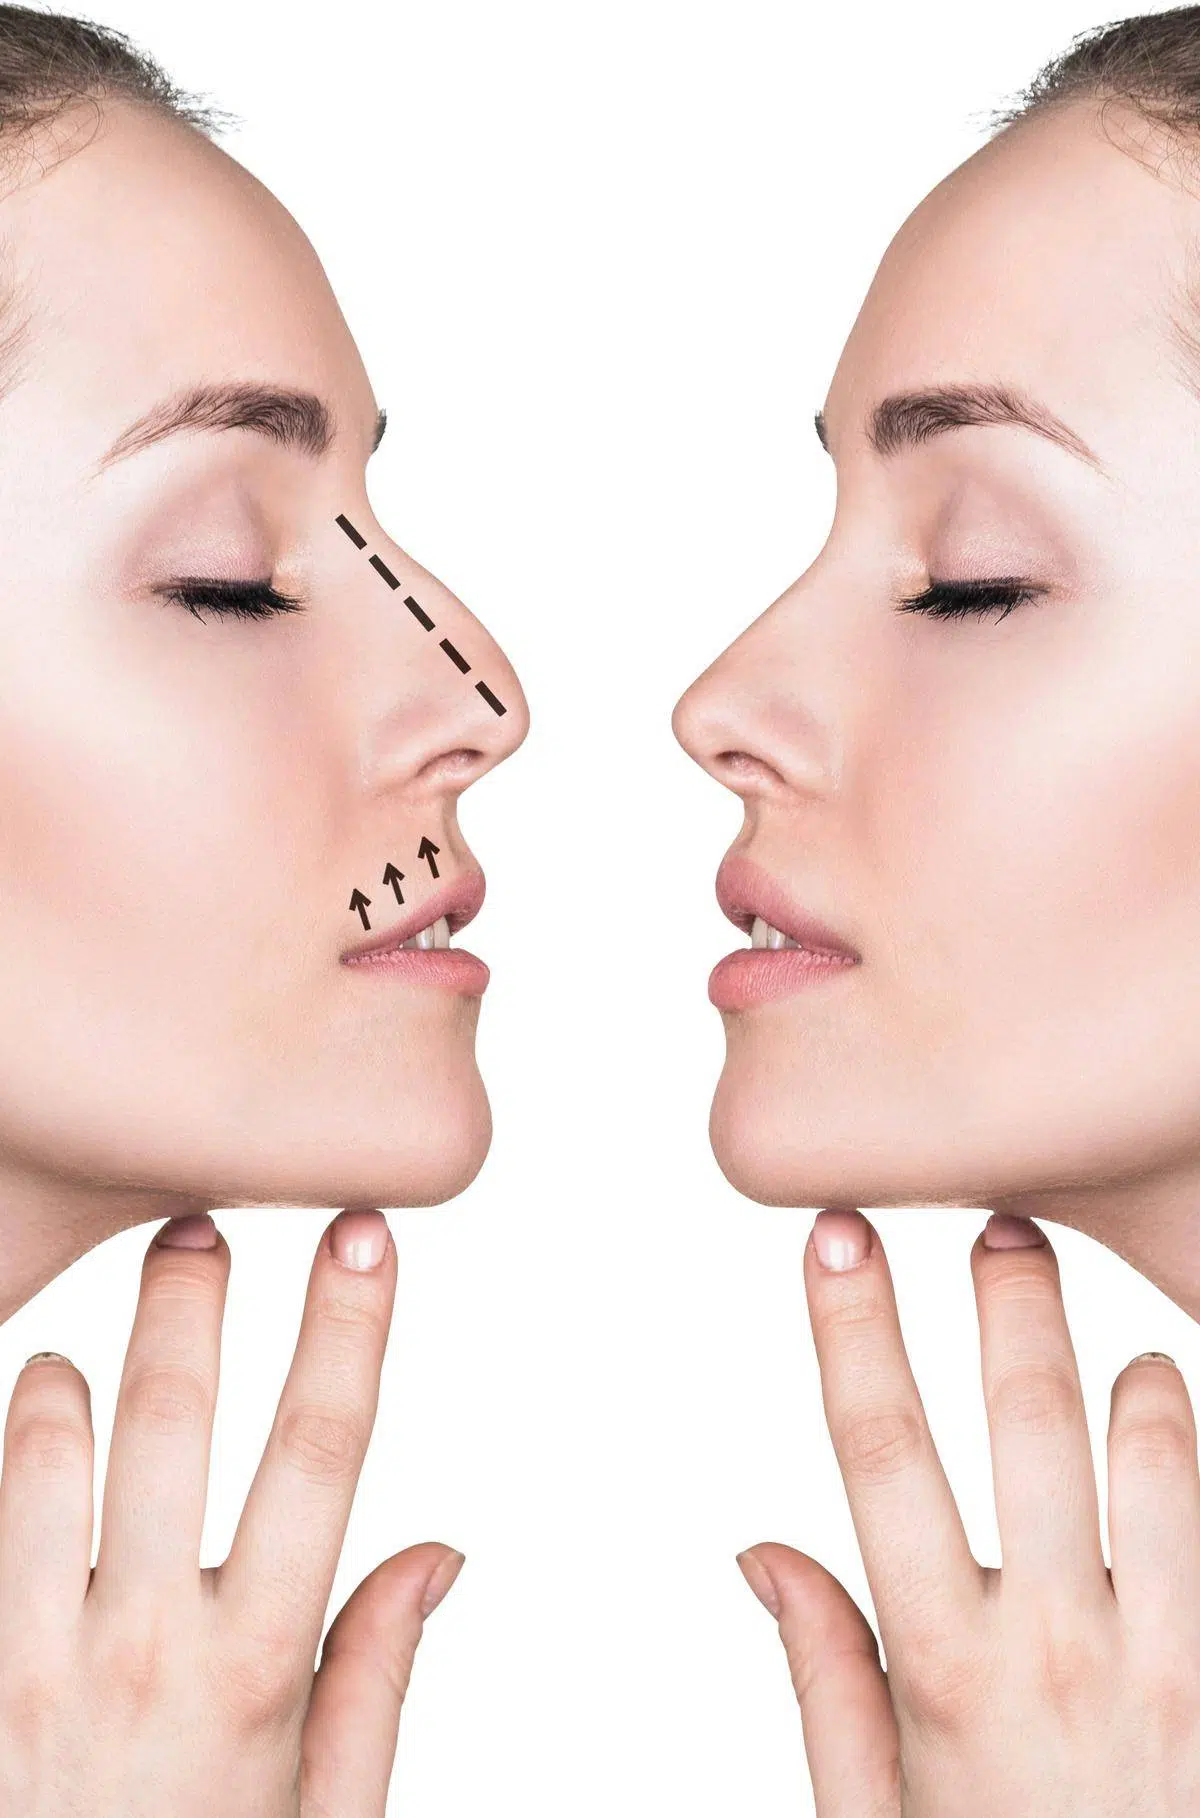 Nasenkorrekturen werden bei Nasenhöcker, bei einer Schiefstellung der Nase oder zur Korrektur der Nasenspitze durchgeführt.